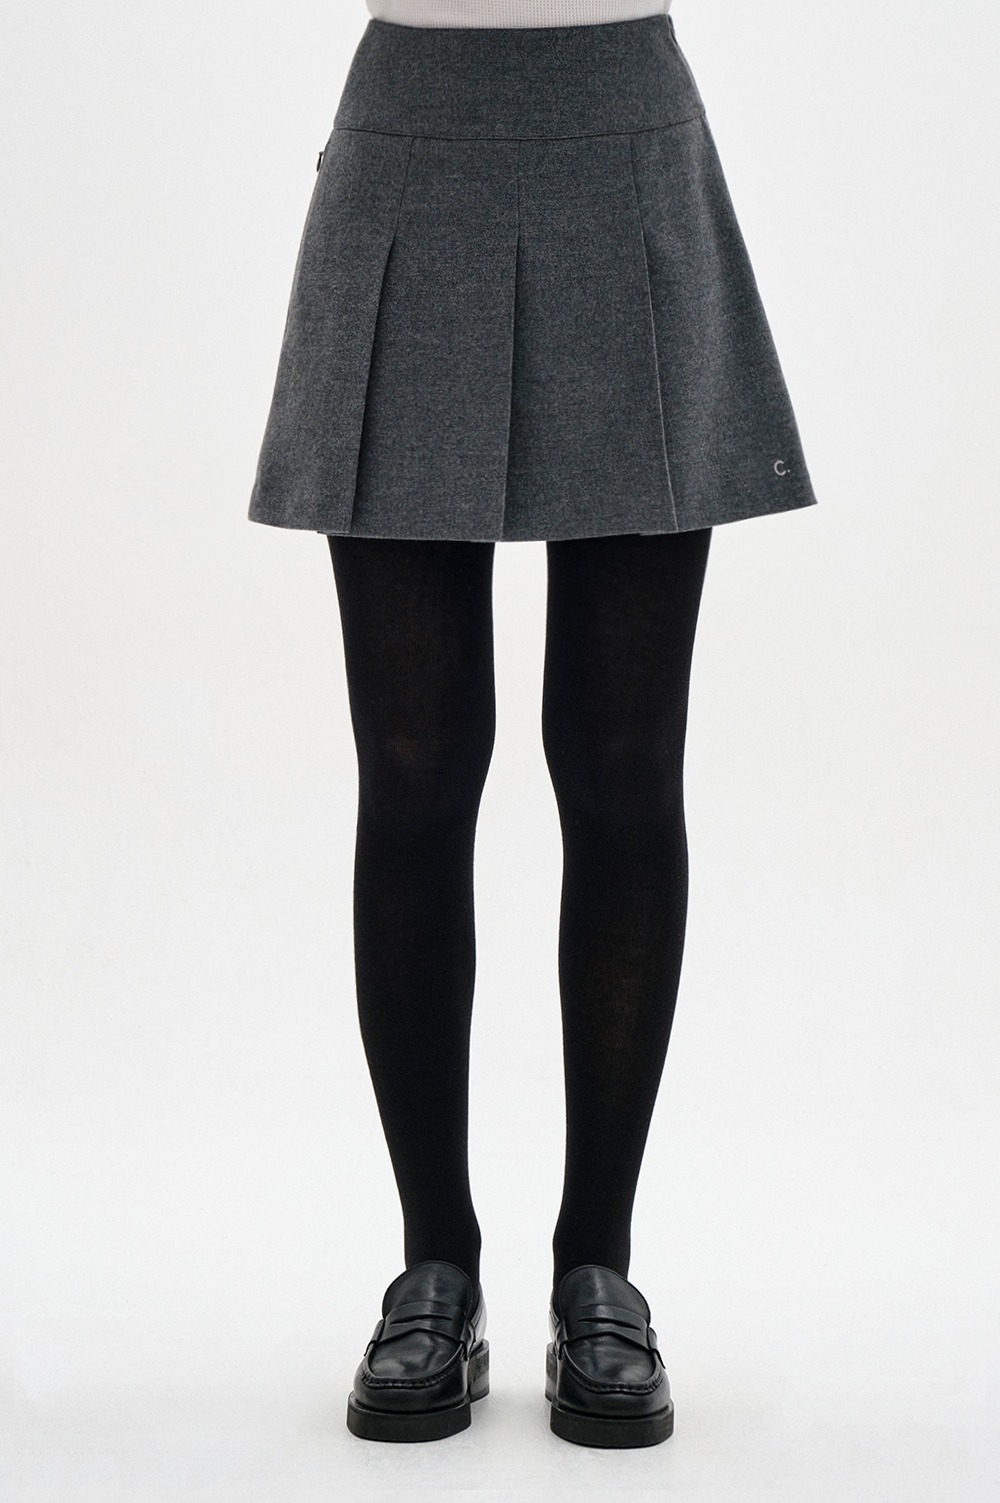 clove - [23FW clove] Wool-blend Pleated Skirt (Charcoal)